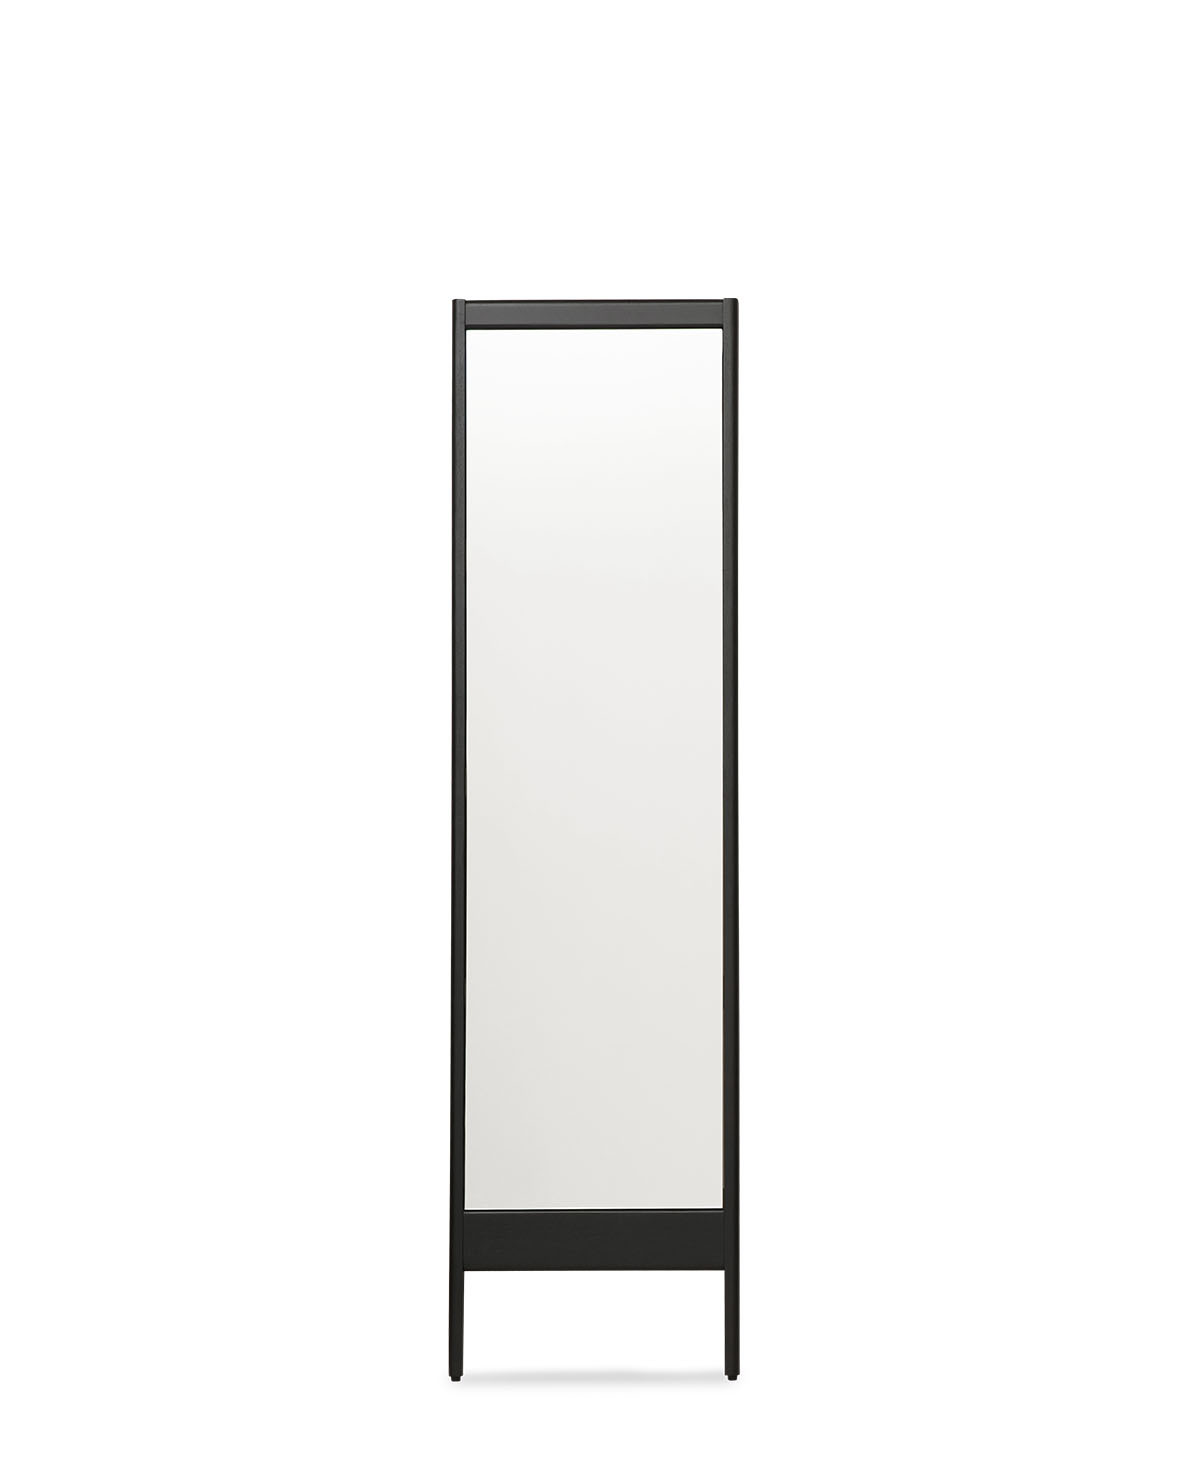 Form & Refine - A Line Spiegel, H 195,5 Cm, Eiche Schwarz Gebeizt